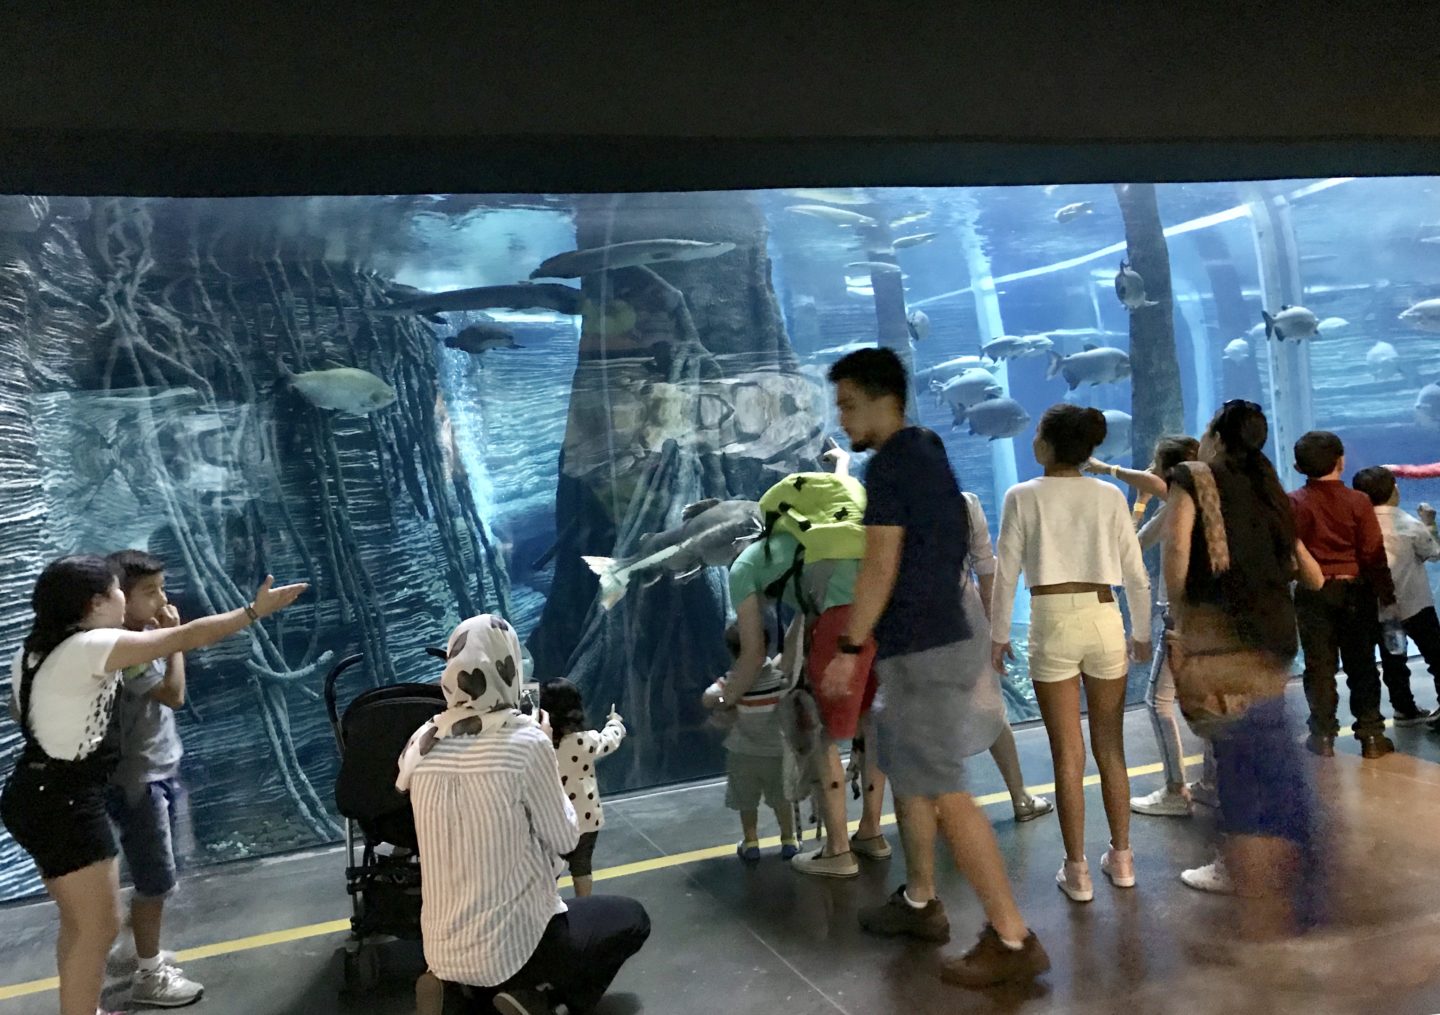 largest freshwater aquarium in South America at Parque Explora Medellin